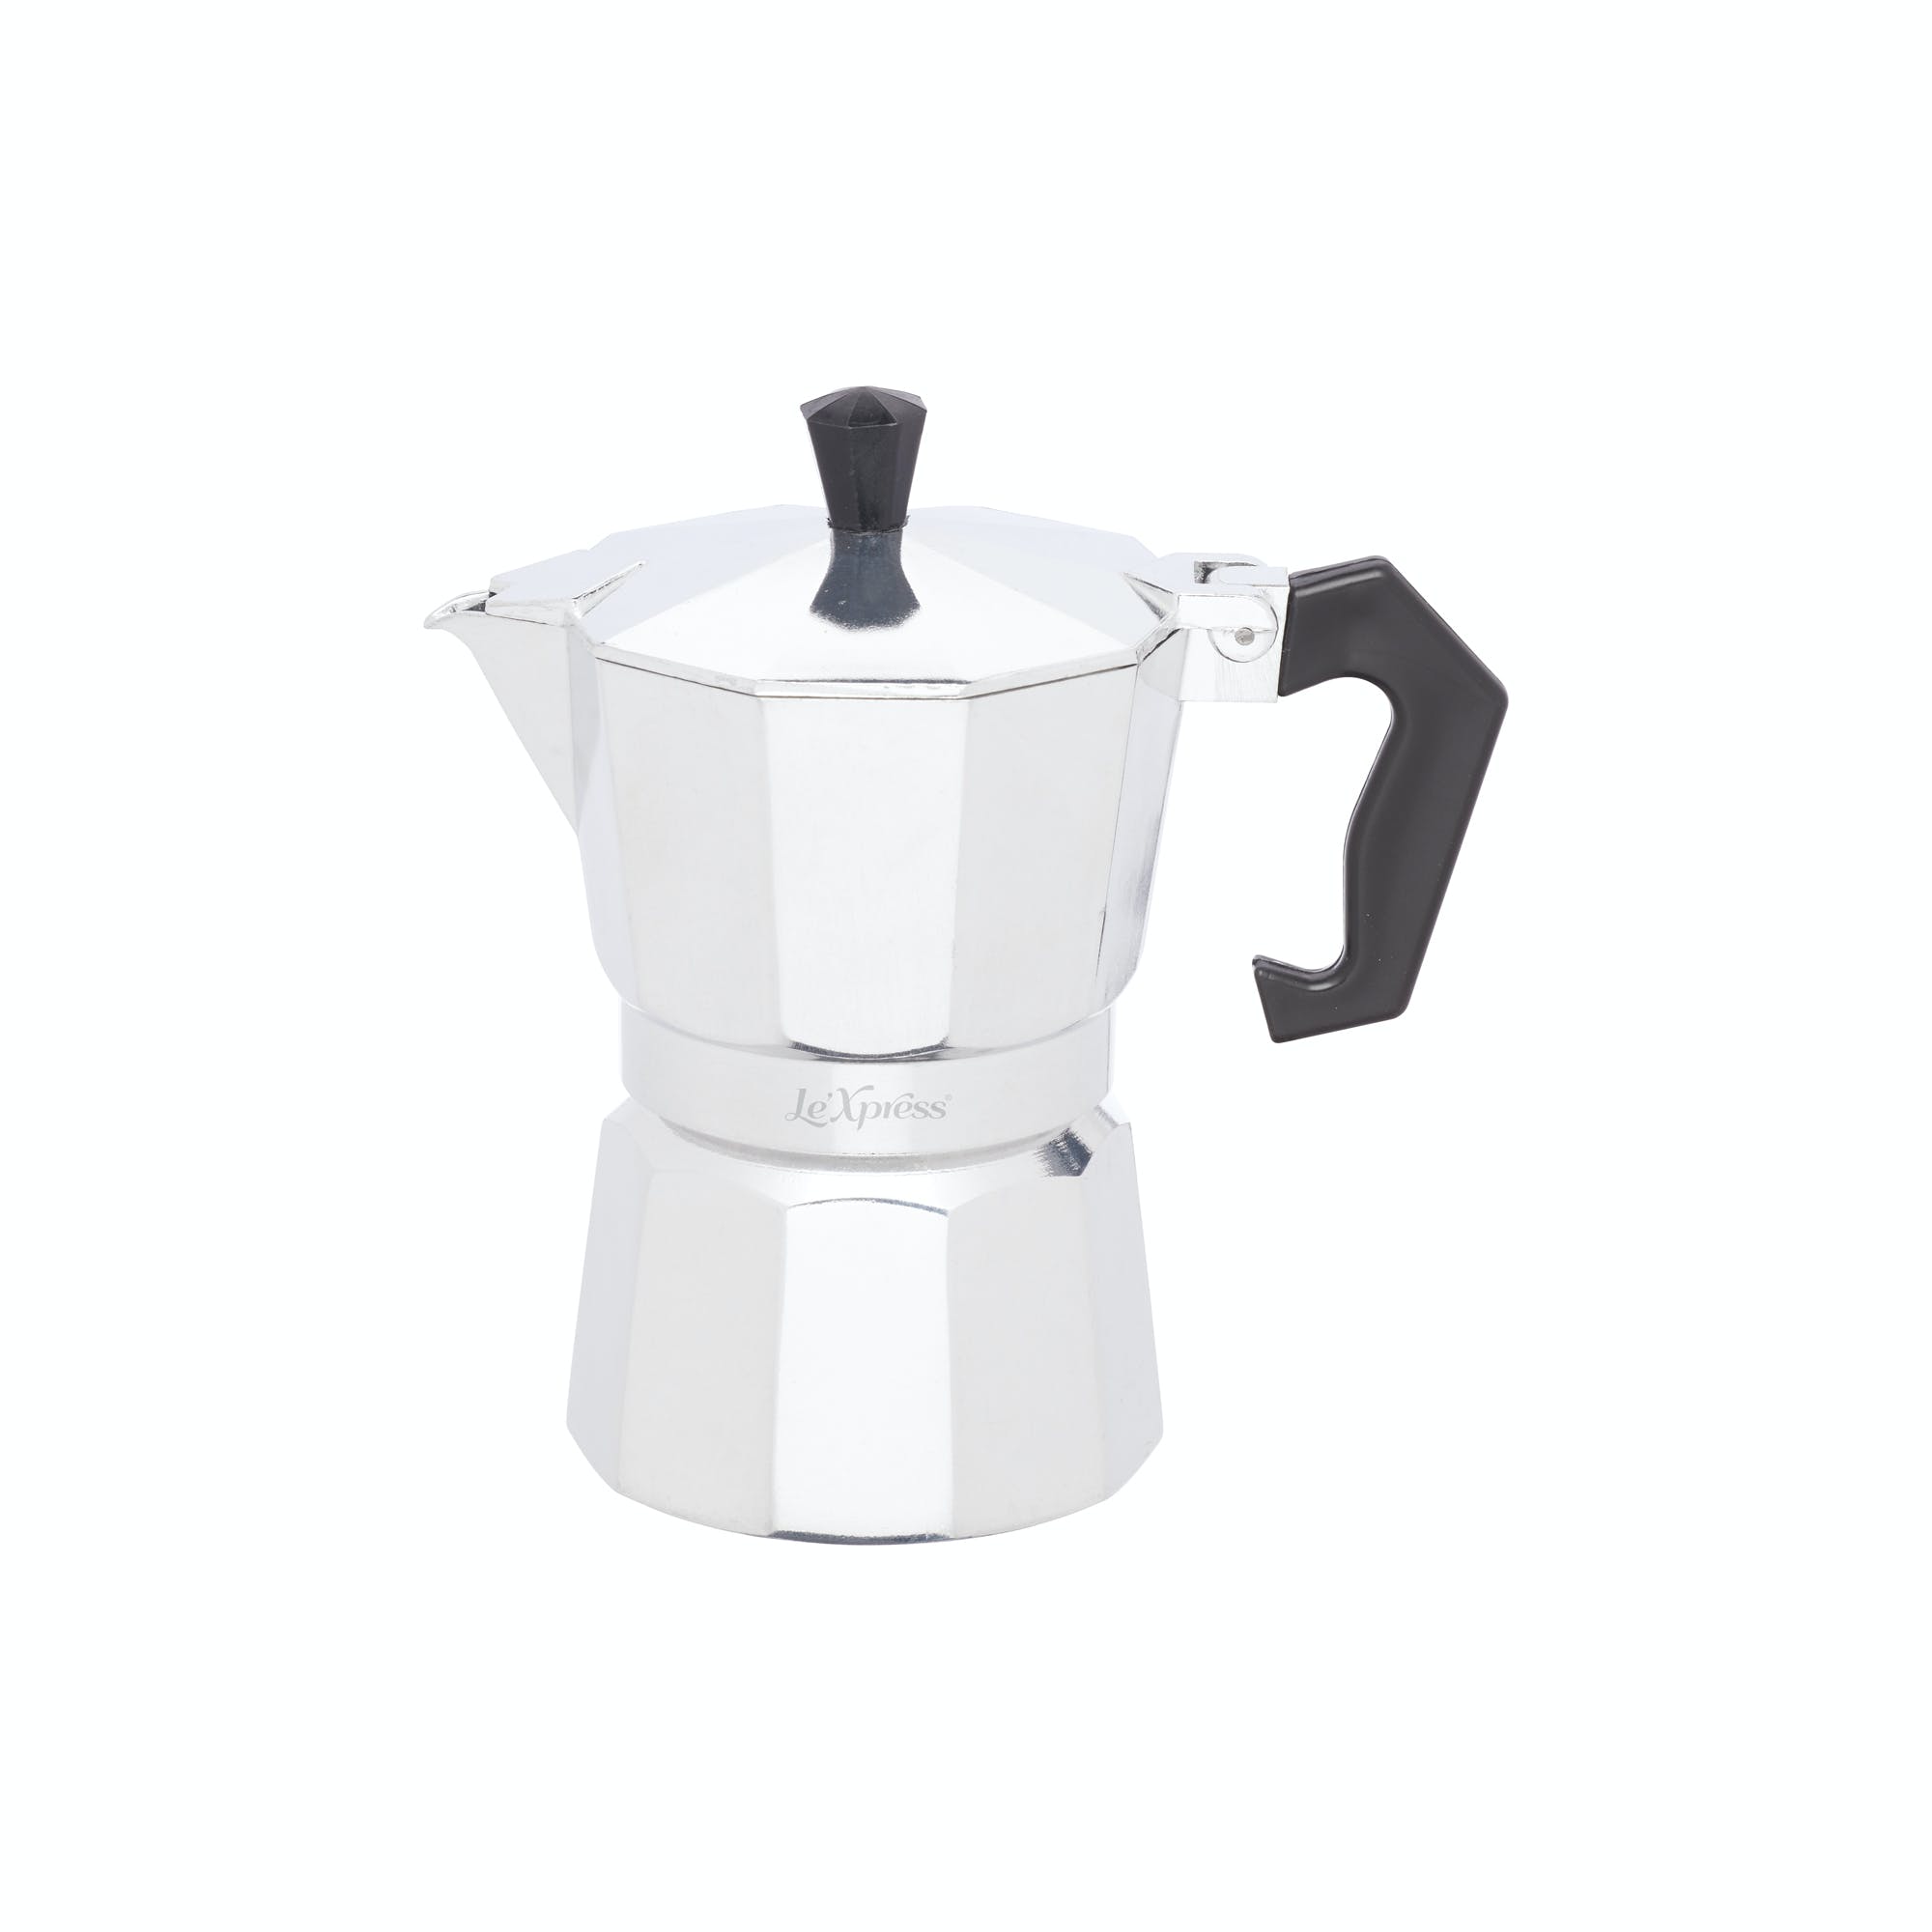 Le’Xpress Italian Style 3 Cup Espresso Maker - The Cooks Cupboard Ltd